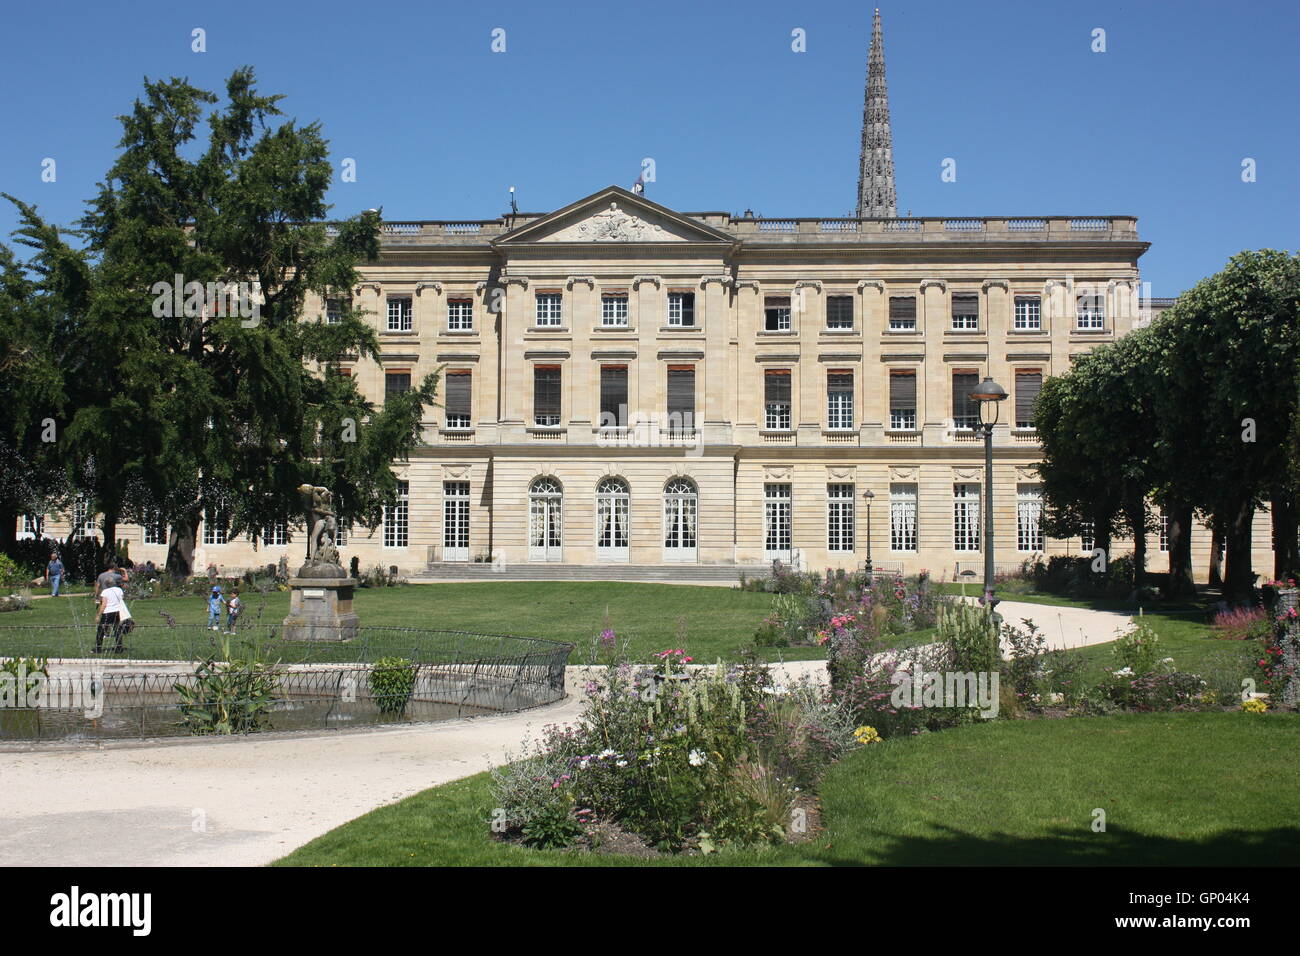 Jardin de la Mairie public park, the Museum of Beaux-Arts occupies part of the Hôtel de Ville (Town Hall). Stock Photo